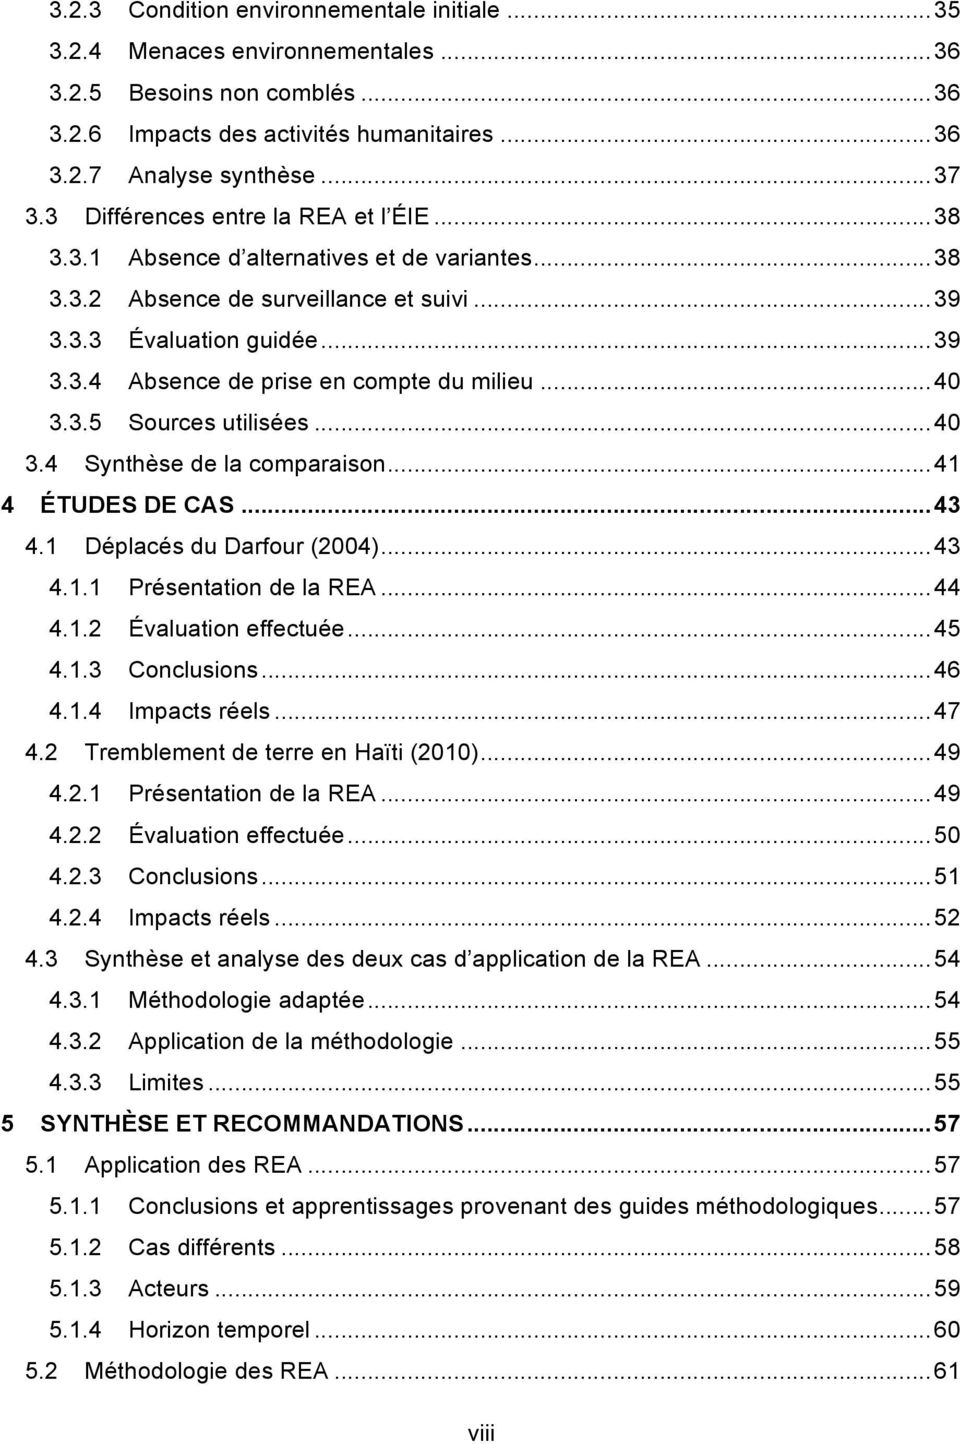 .. 40 3.3.5 Sources utilisées... 40 3.4 Synthèse de la comparaison... 41 4 ÉTUDES DE CAS... 43 4.1 Déplacés du Darfour (2004)... 43 4.1.1 Présentation de la REA... 44 4.1.2 Évaluation effectuée... 45 4.